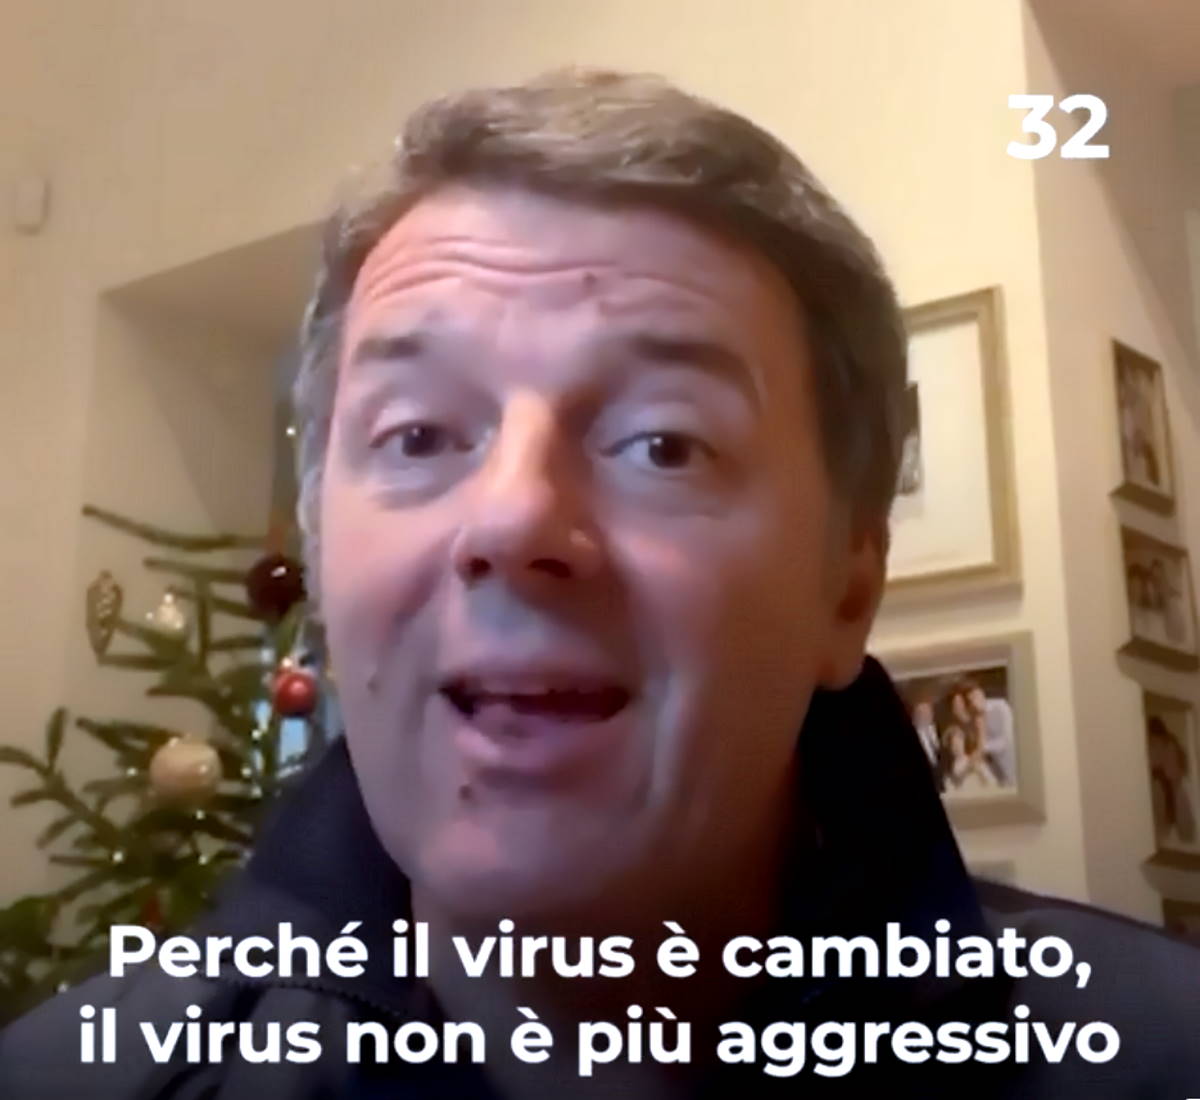 Le ultime del virologo Renzi sulle restrizioni da applicare solo ai no vax